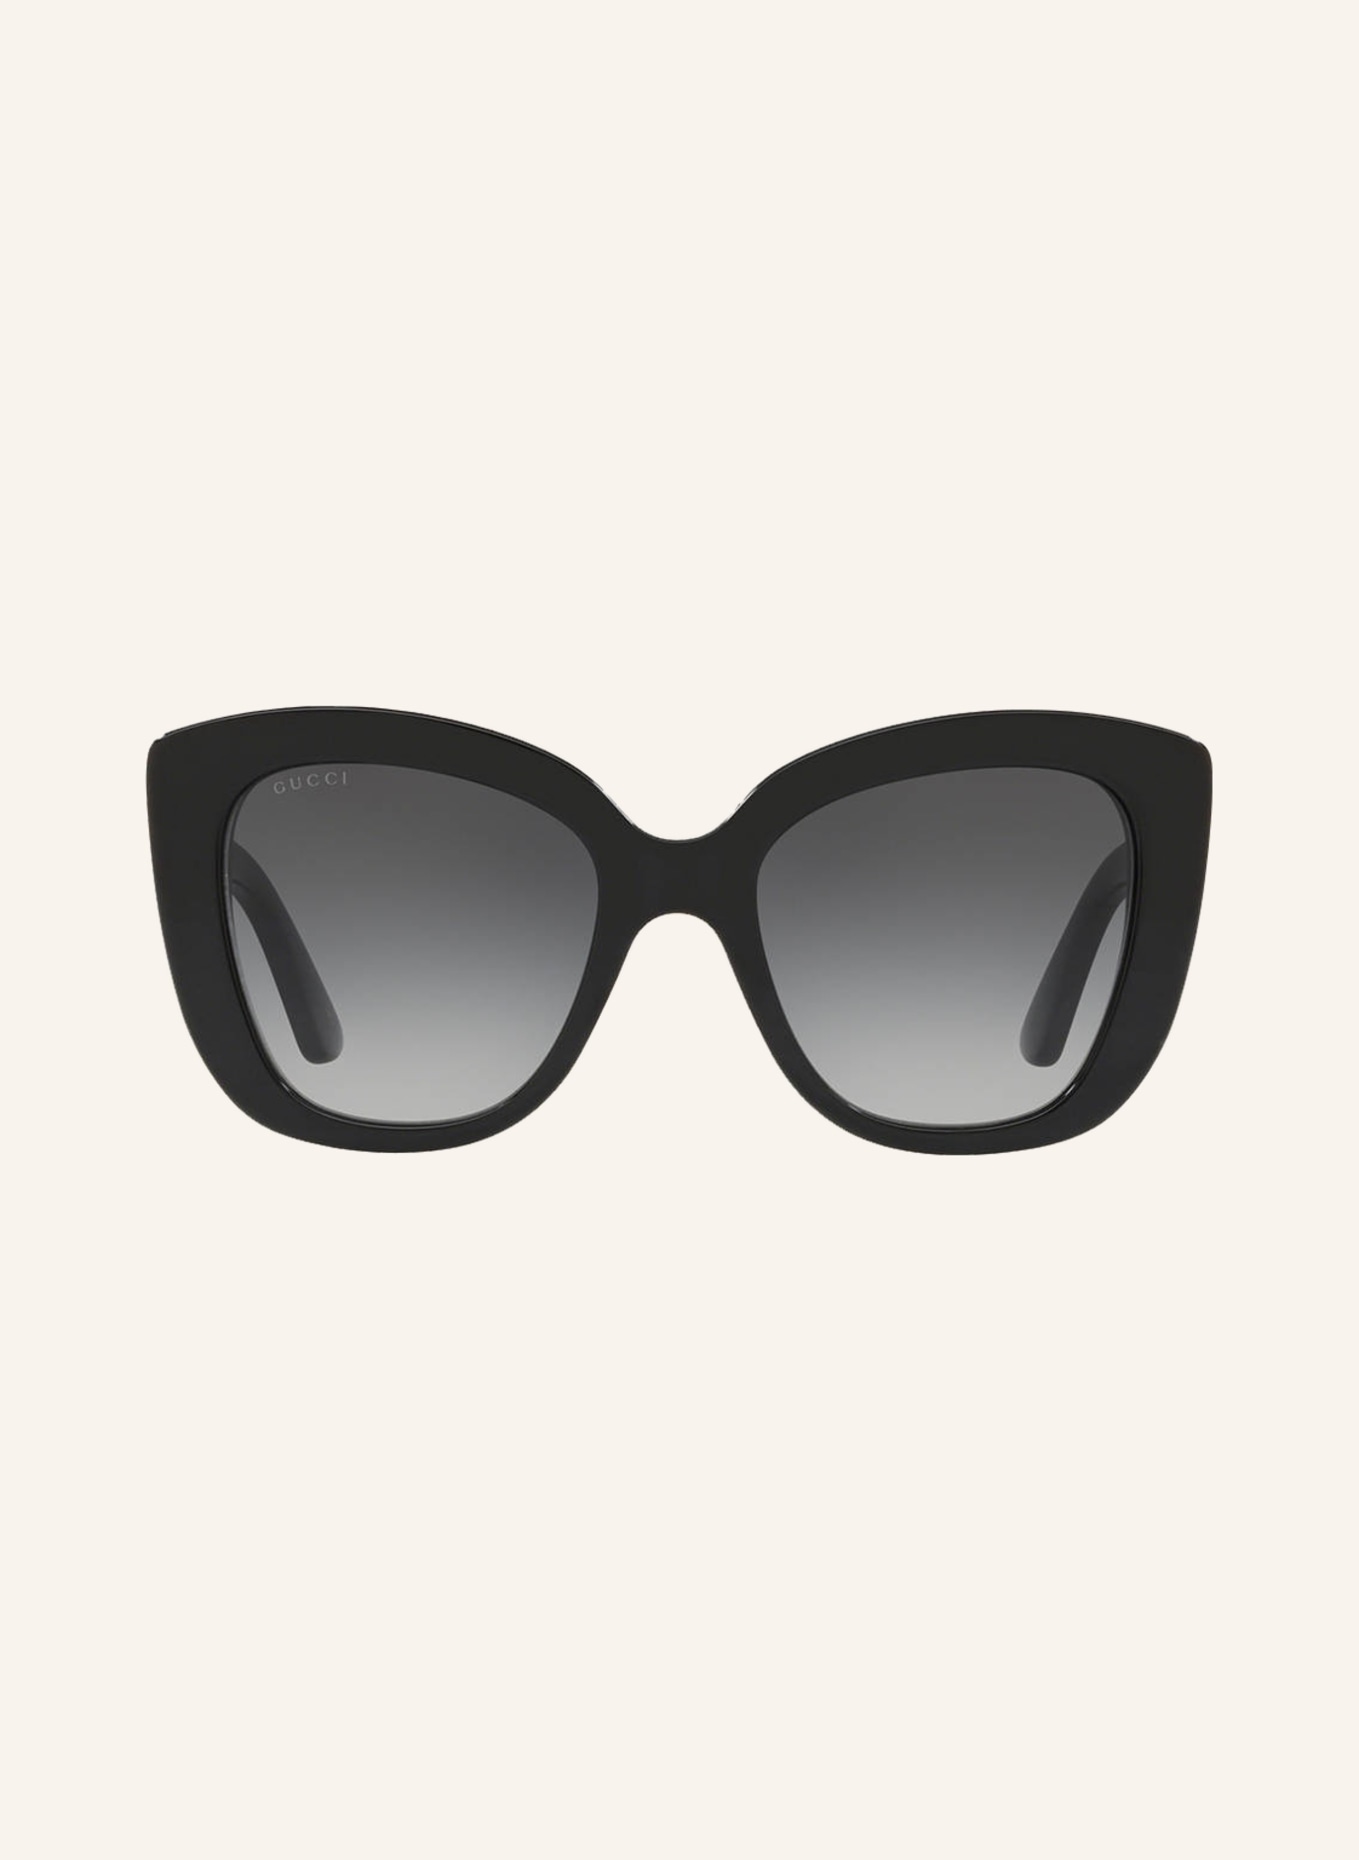 GUCCI Sonnenbrille GC001150, Farbe: 1330L3 - BLACK SHINY (Bild 2)